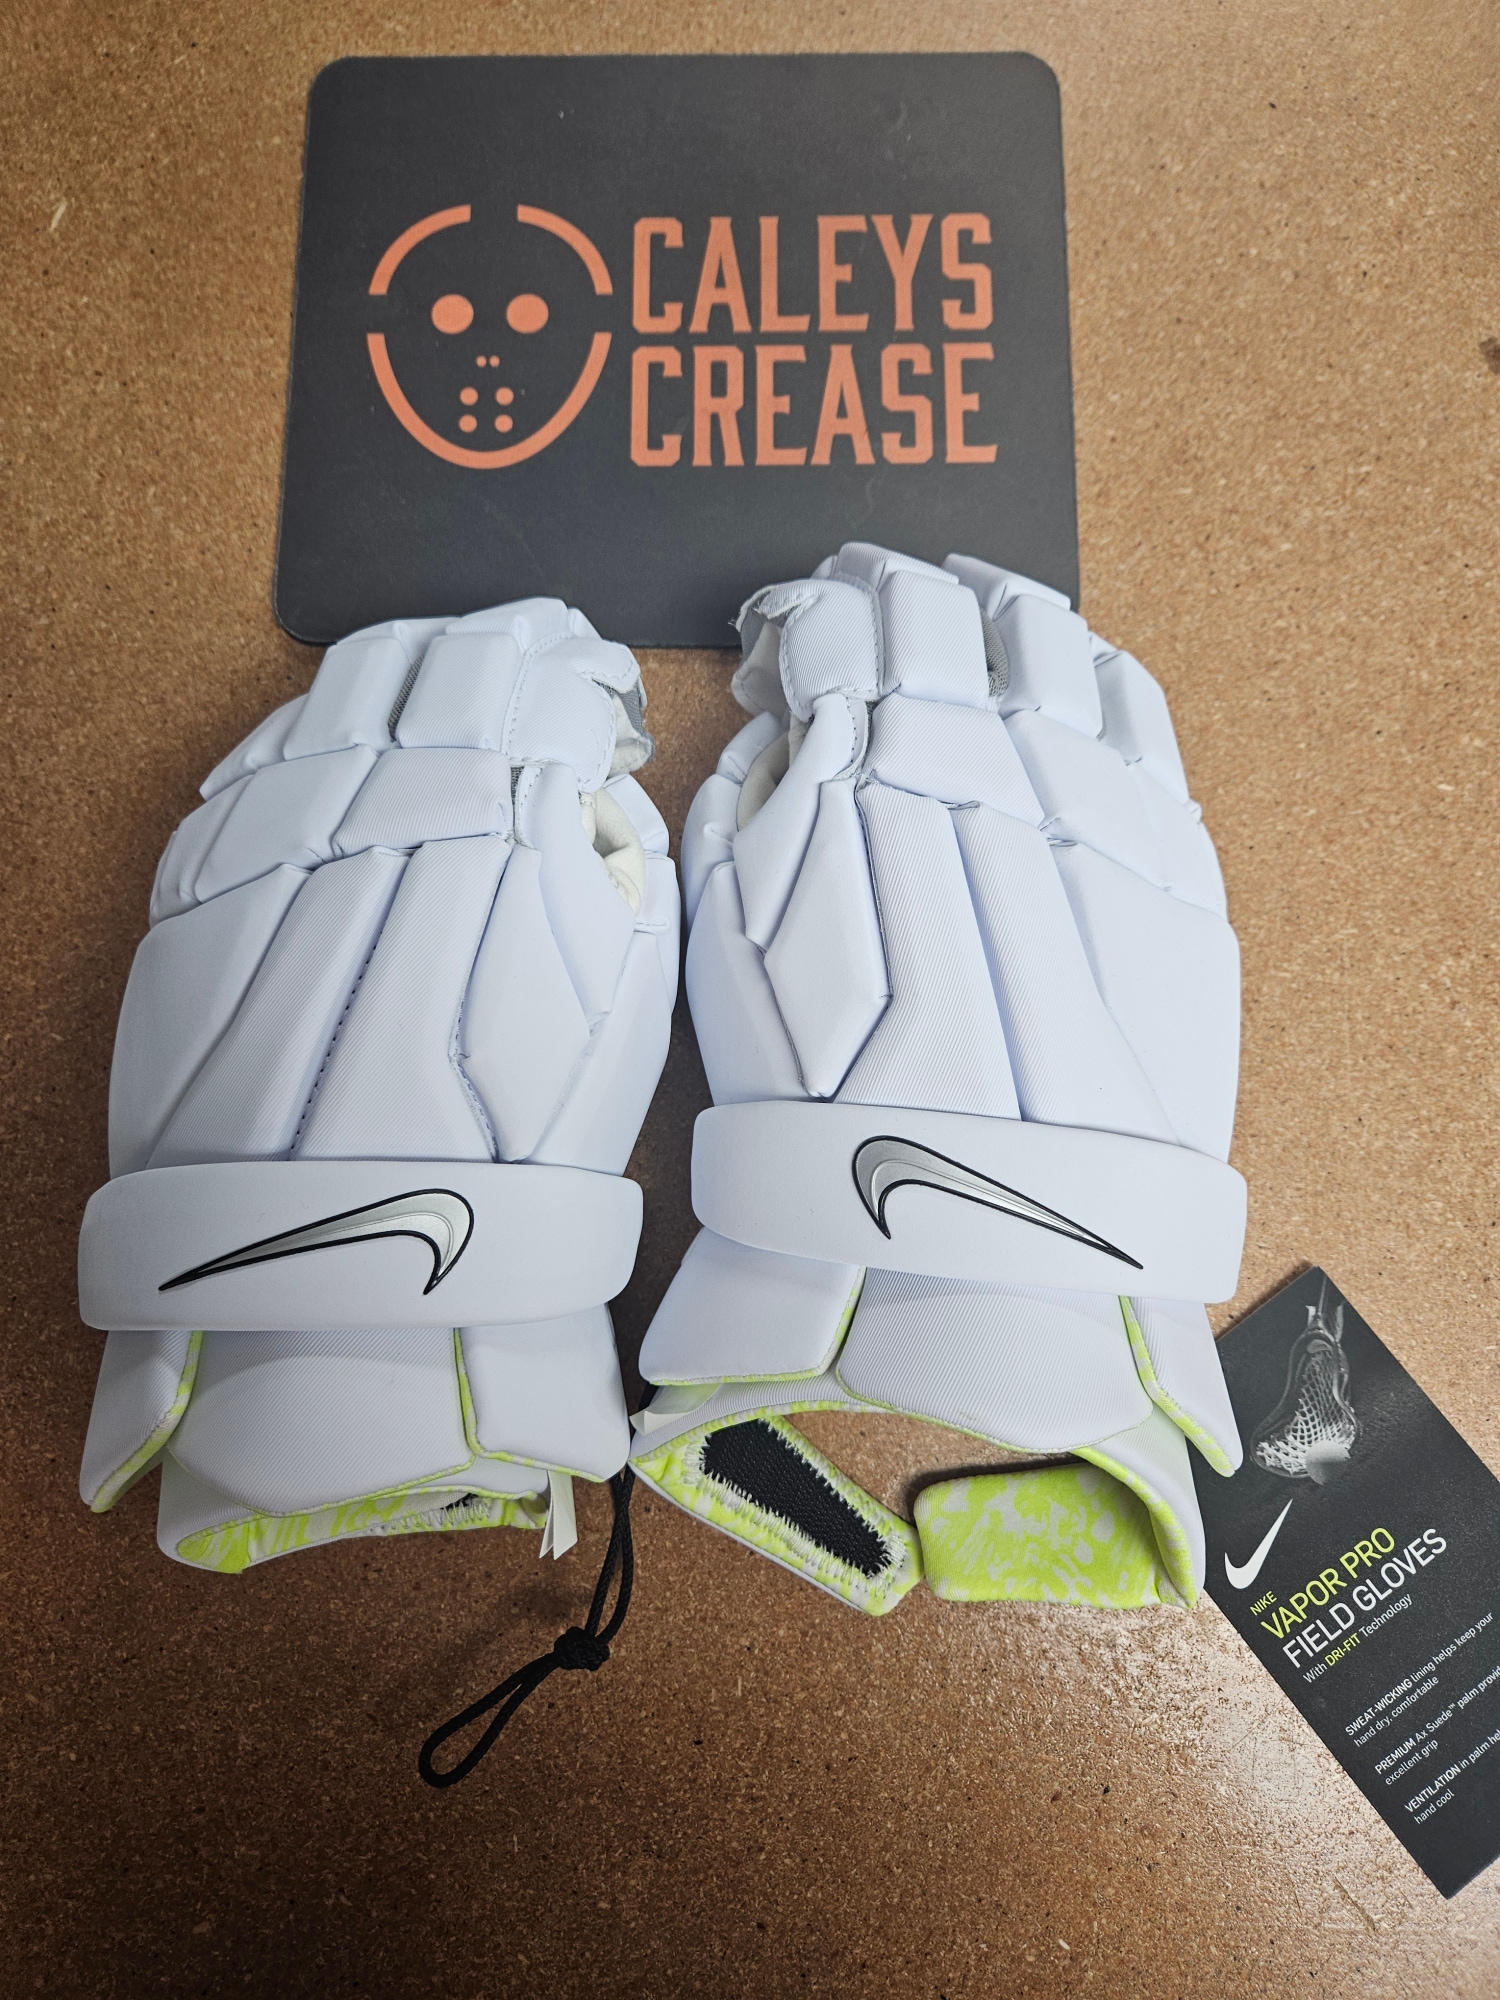 New Nike Vapor Pro Lacrosse Gloves Extra Large